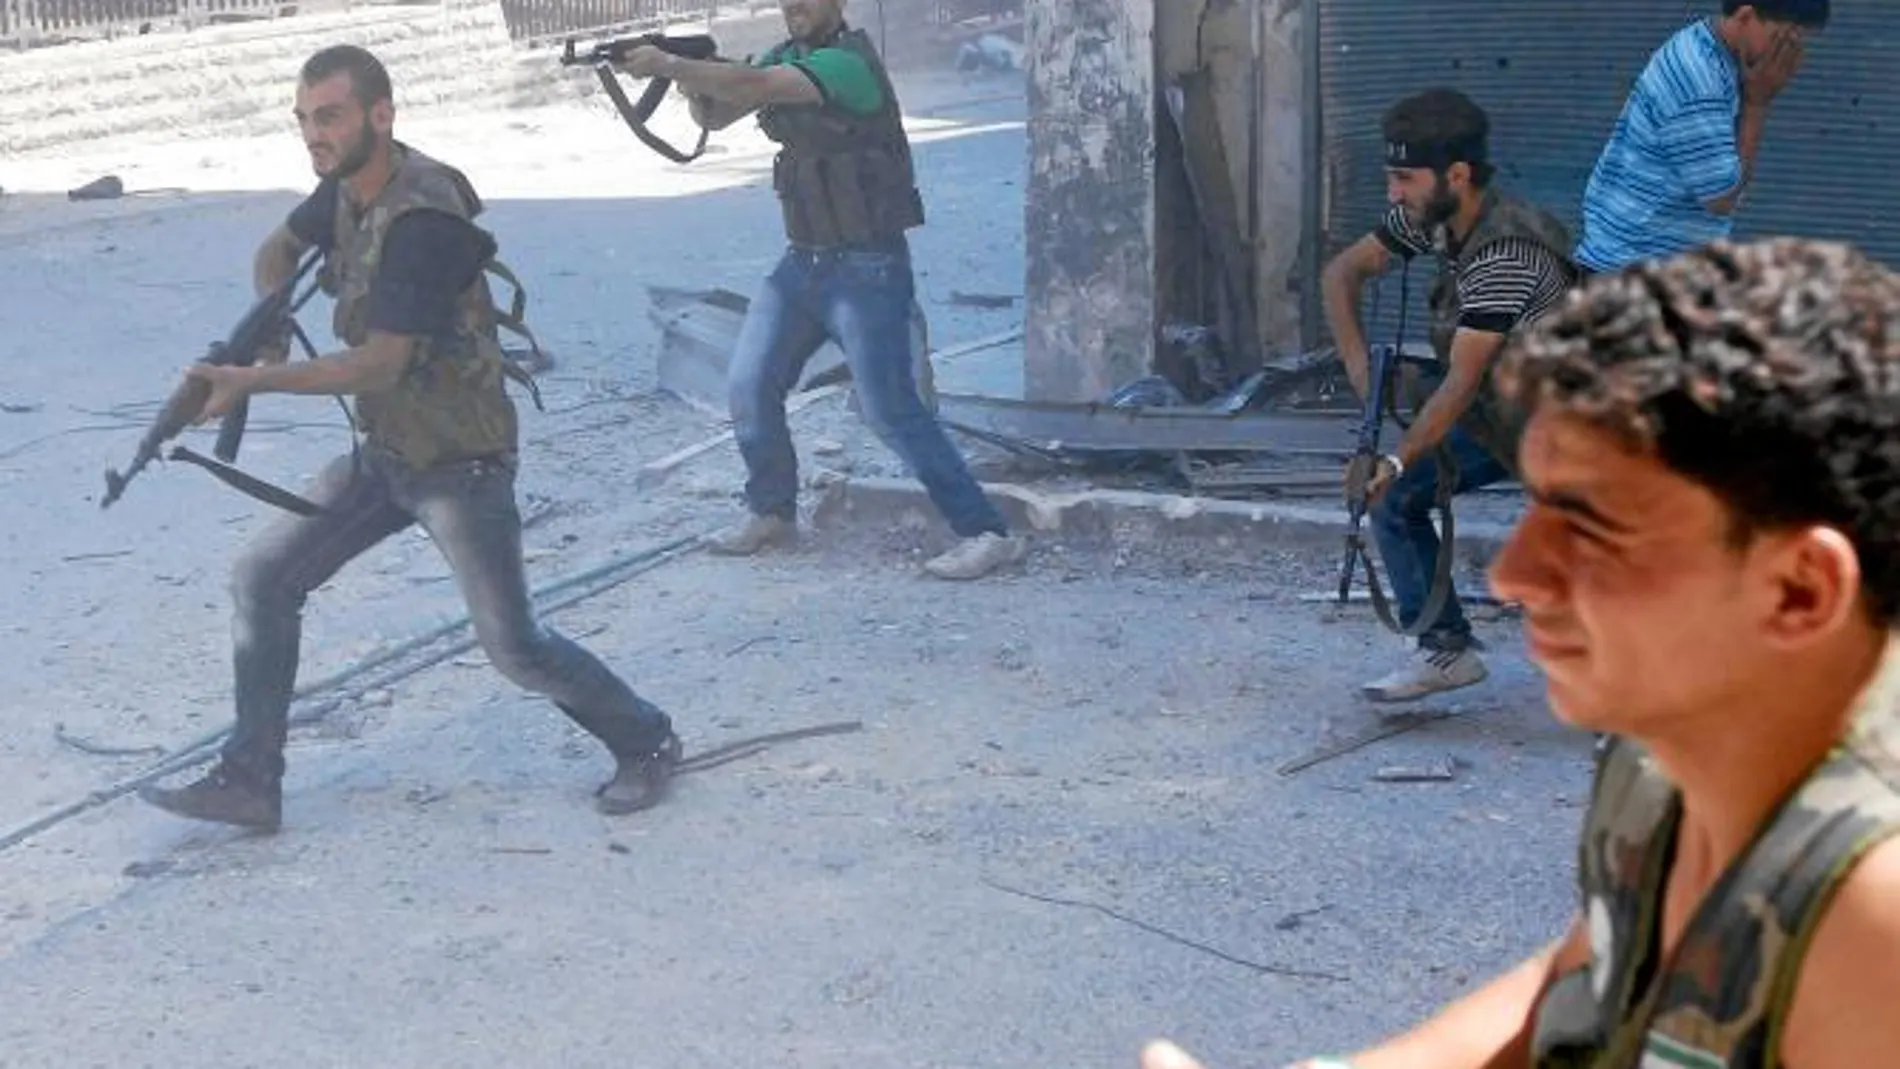 A SANGRE Y FUEGO. El Ejército y los rebeldes libran una batalla sin cuartel por el control de Alepo. Duros combates en el distrito de Saladino (en la imagen)